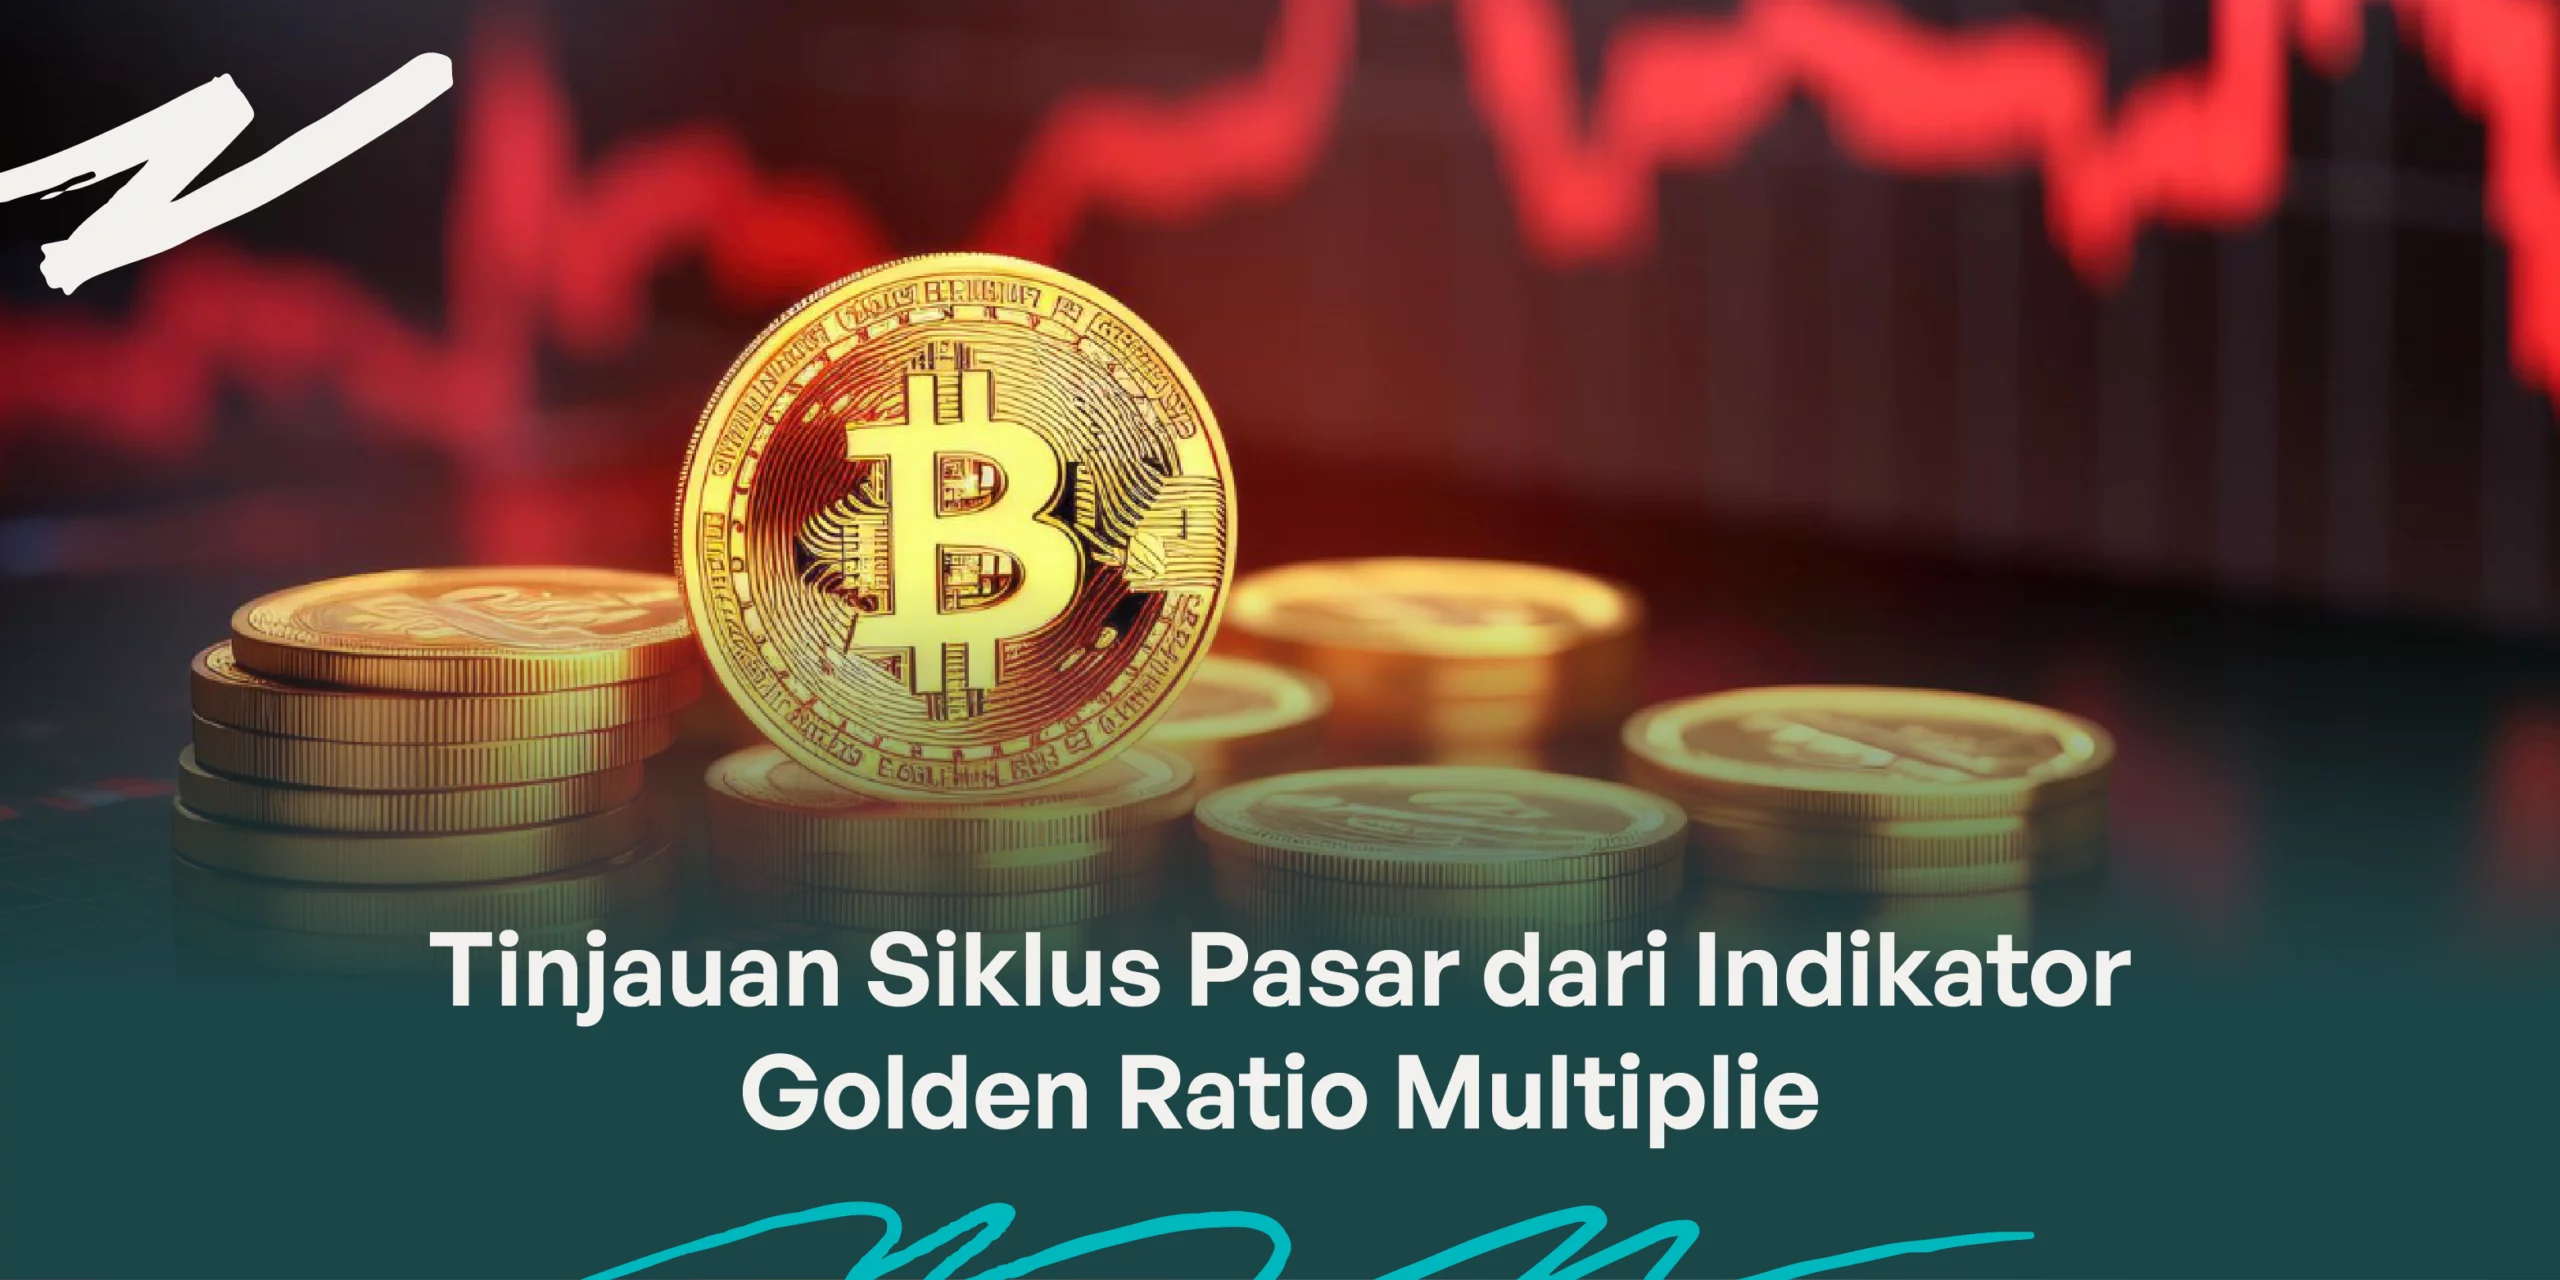 Tinjauan Siklus Pasar Crypto dari Indikator Golden Ratio Multiplier